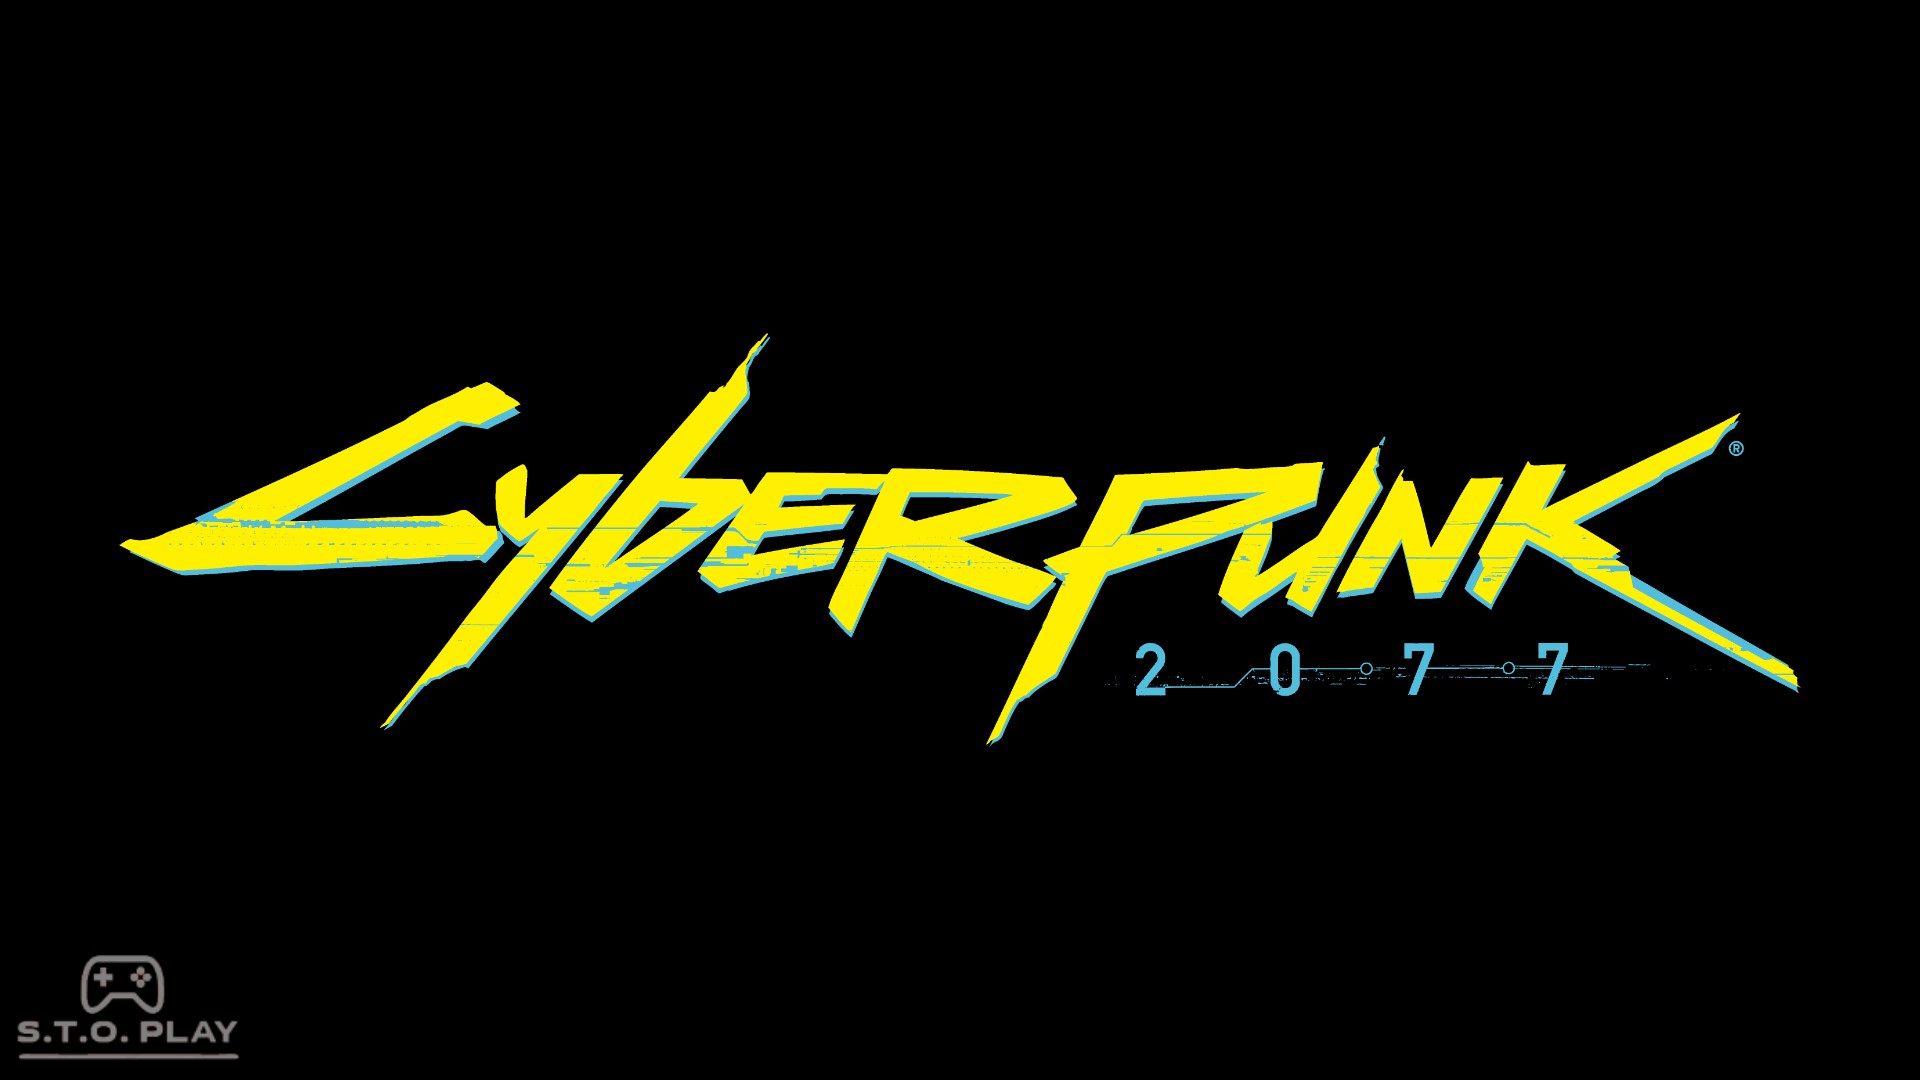 Cyberpunk numbers font фото 62